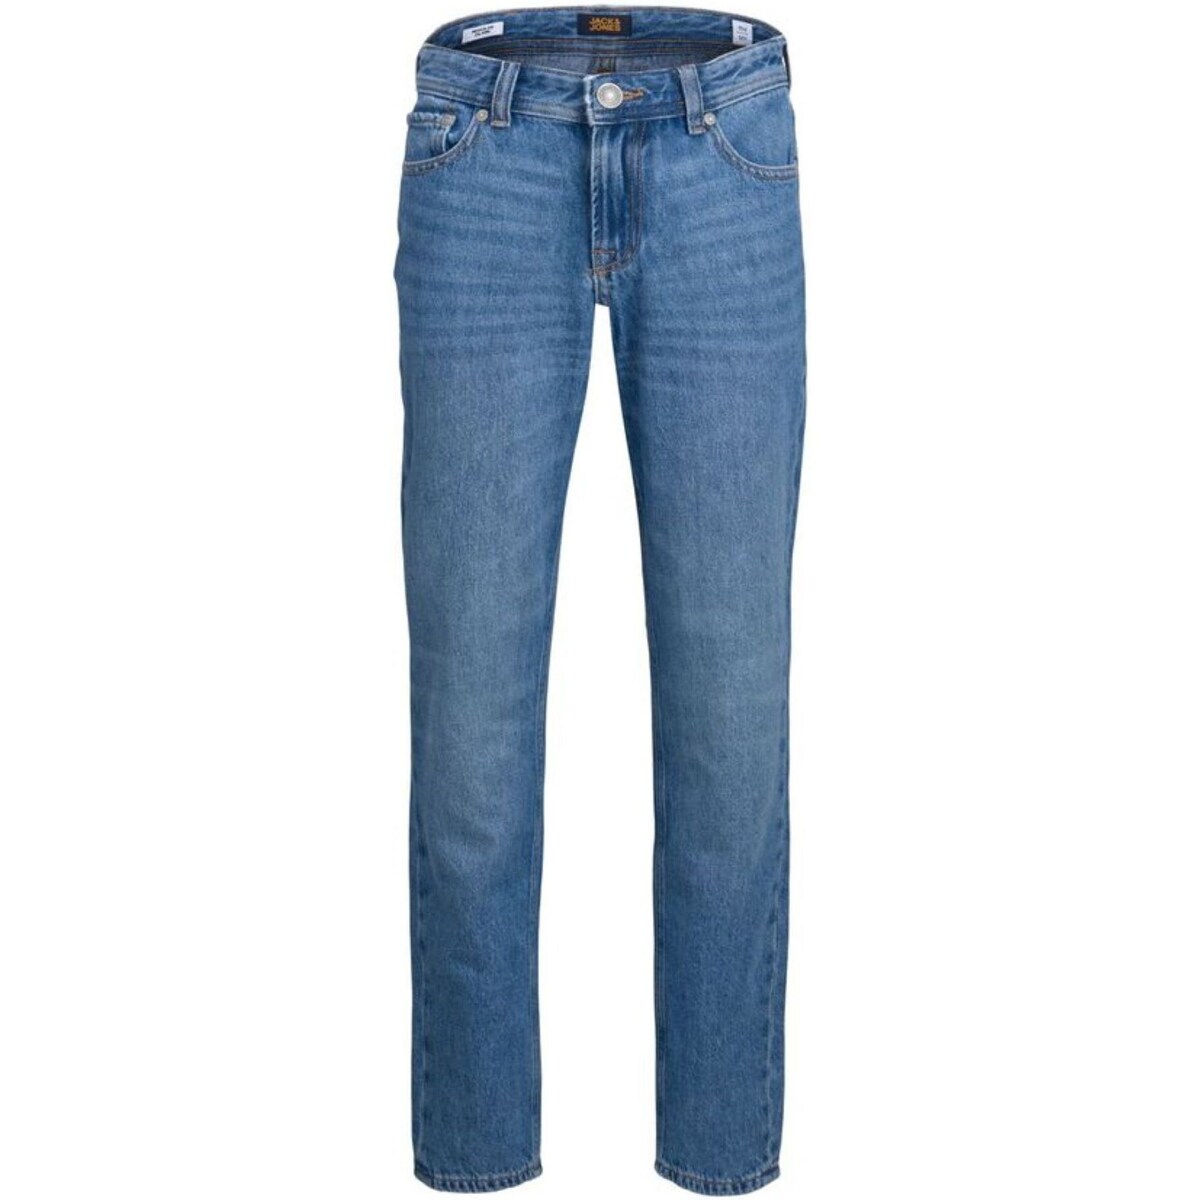 Textil Rapaz Calças Jeans Jack&jones Junior 12204020 Azul